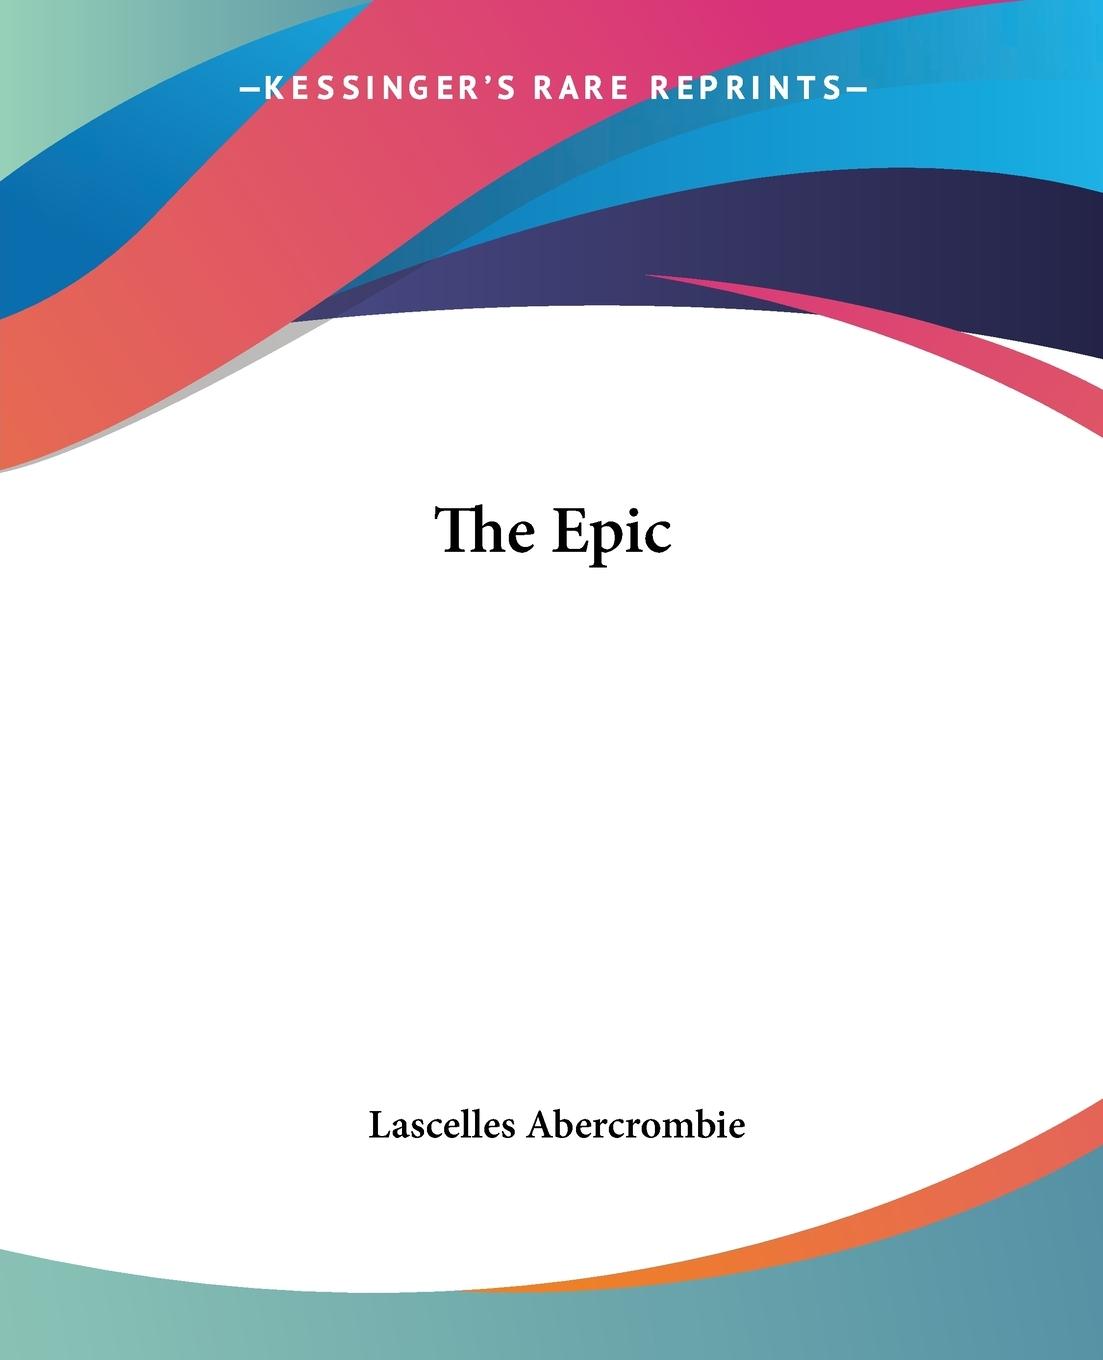 The Epic - Abercrombie, Lascelles